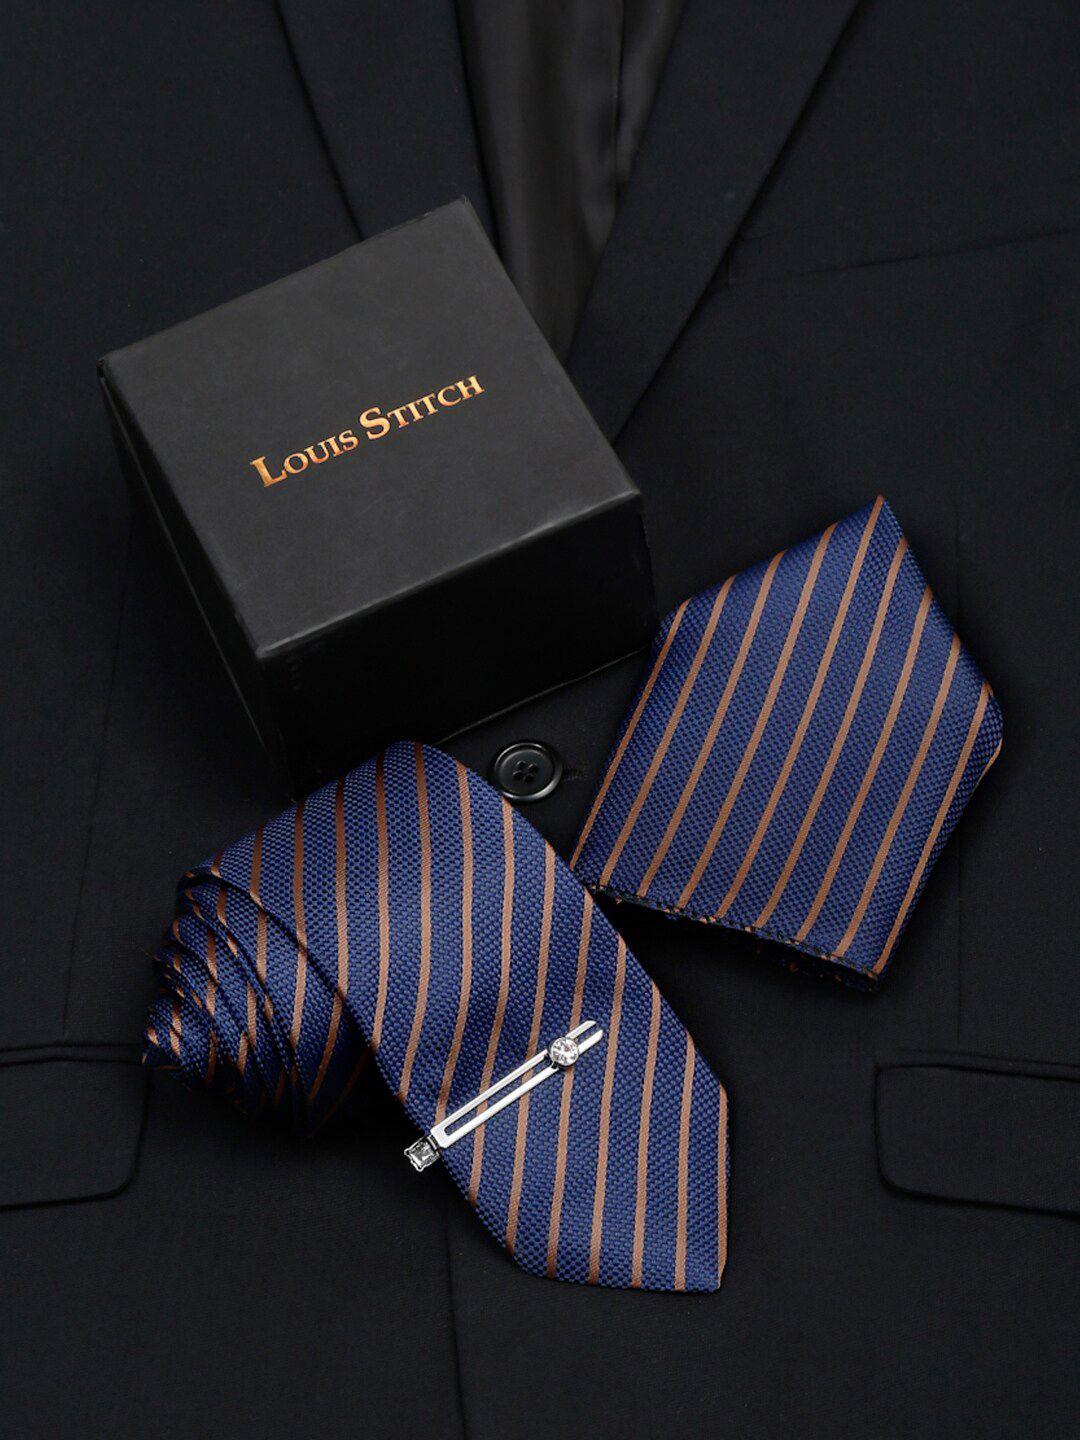 louis stitch men italian silk necktie set